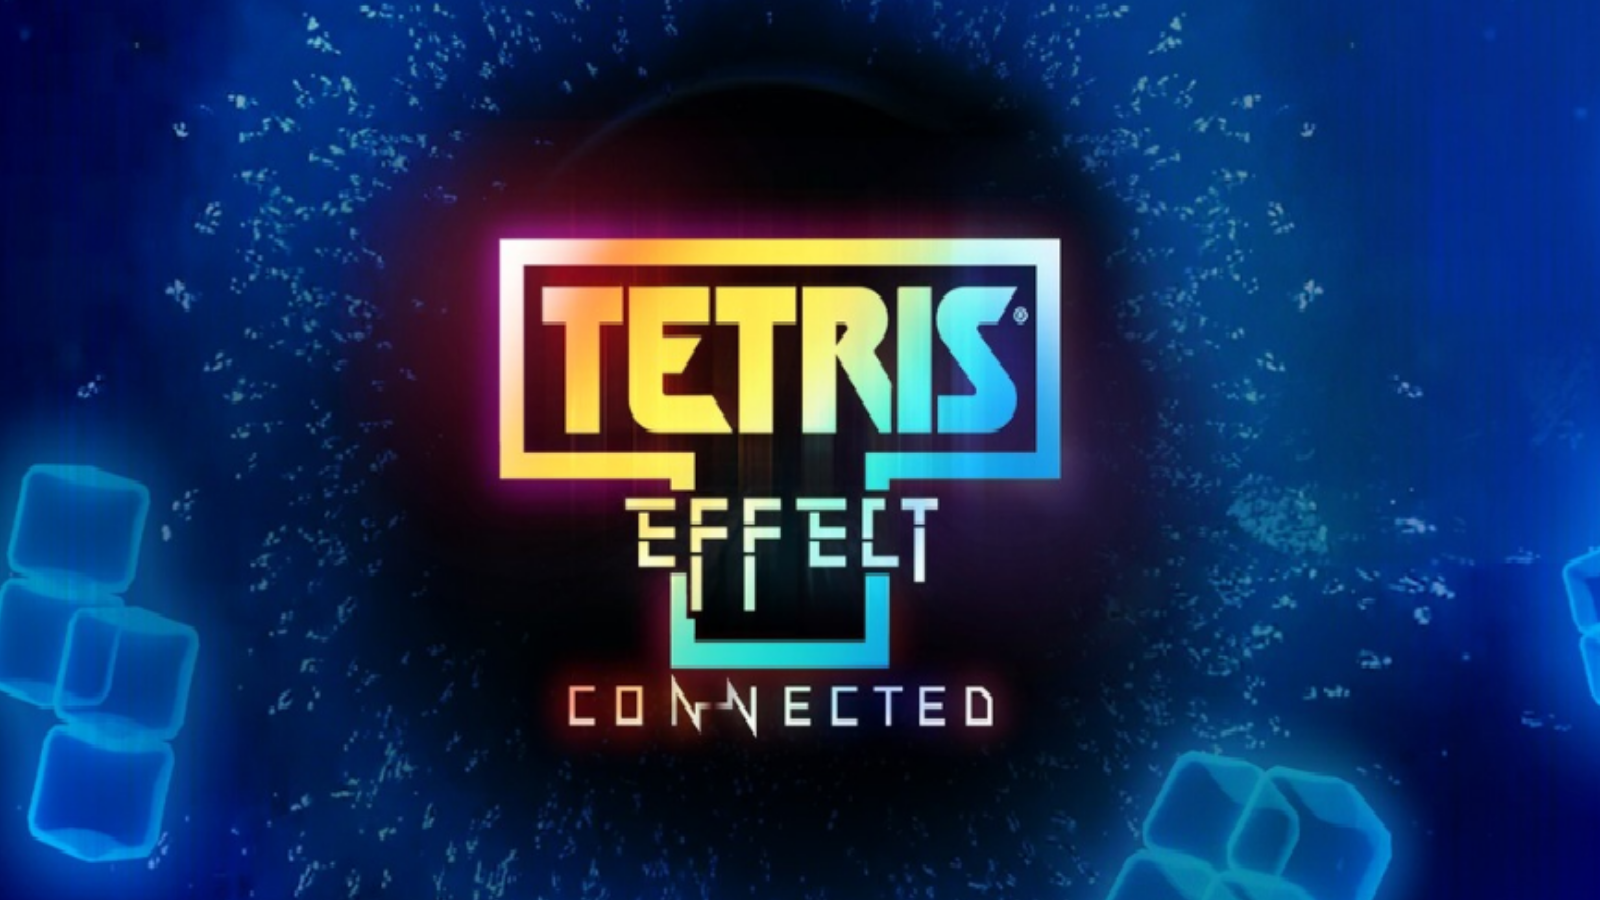 Tetris Effect: Connected size daha önce oynamadığınız şekilde duyusal deneyimler sunuyor.